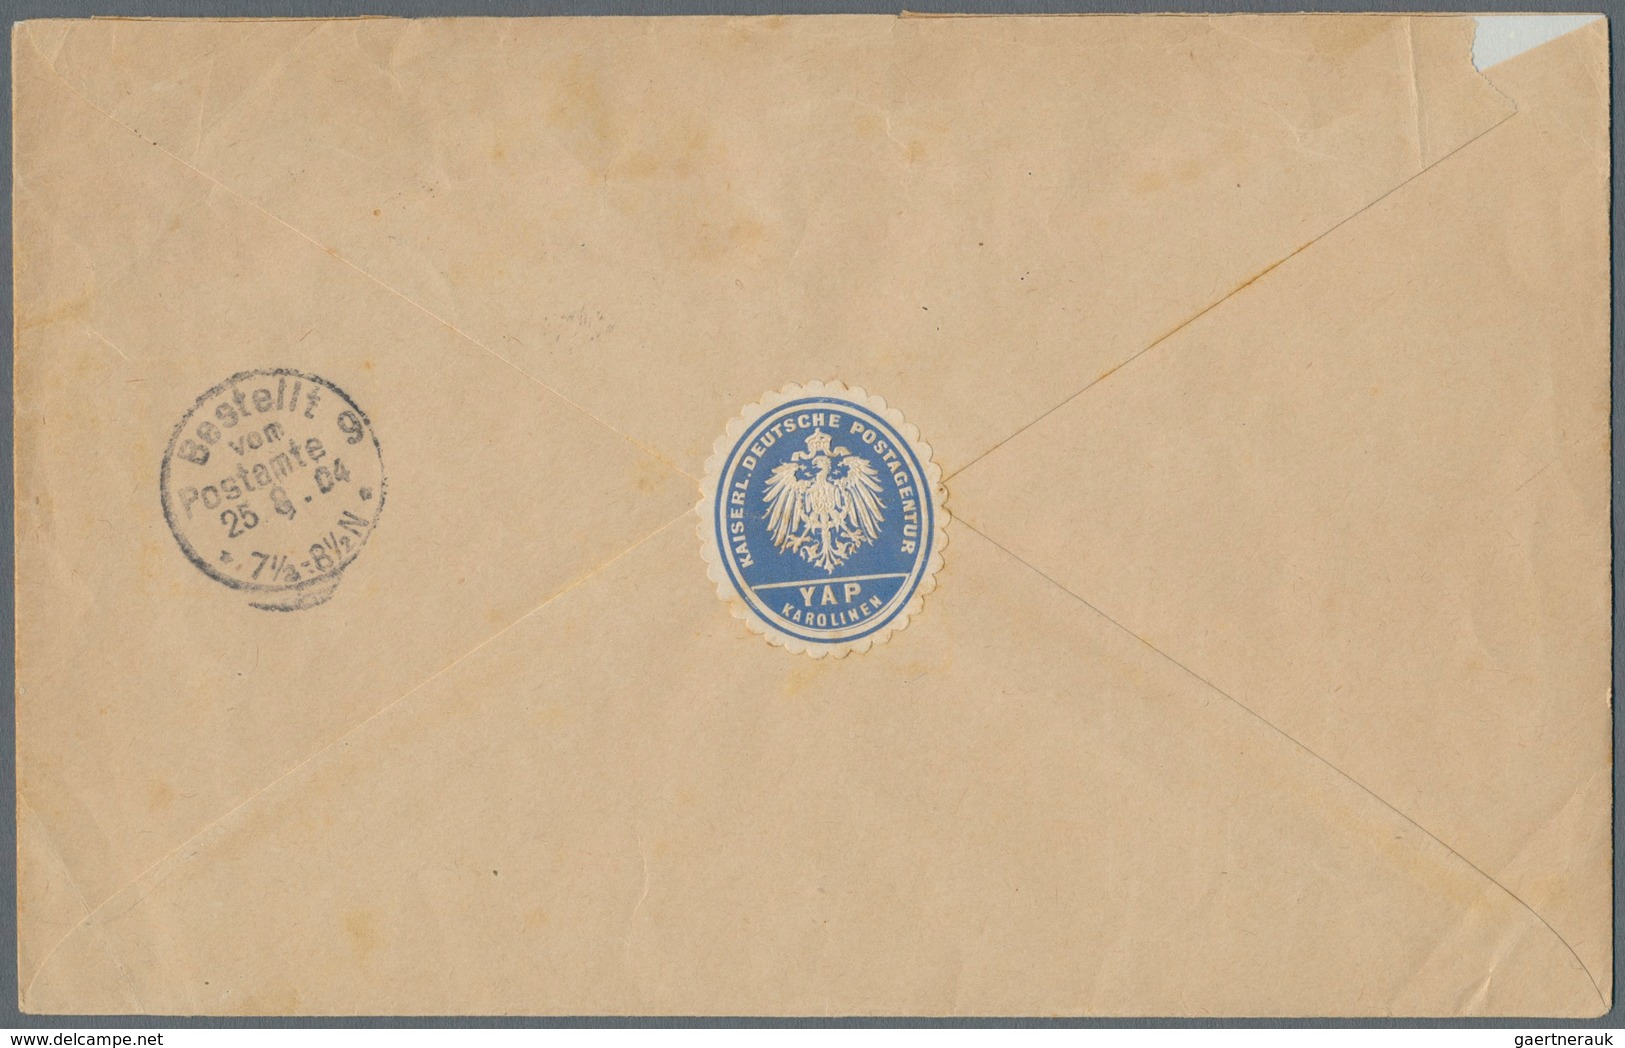 Deutsche Kolonien - Karolinen - Besonderheiten: 1904, Postsachen-Umschlag Aus "YAP KAROLINEN 13.7.04 - Carolinen